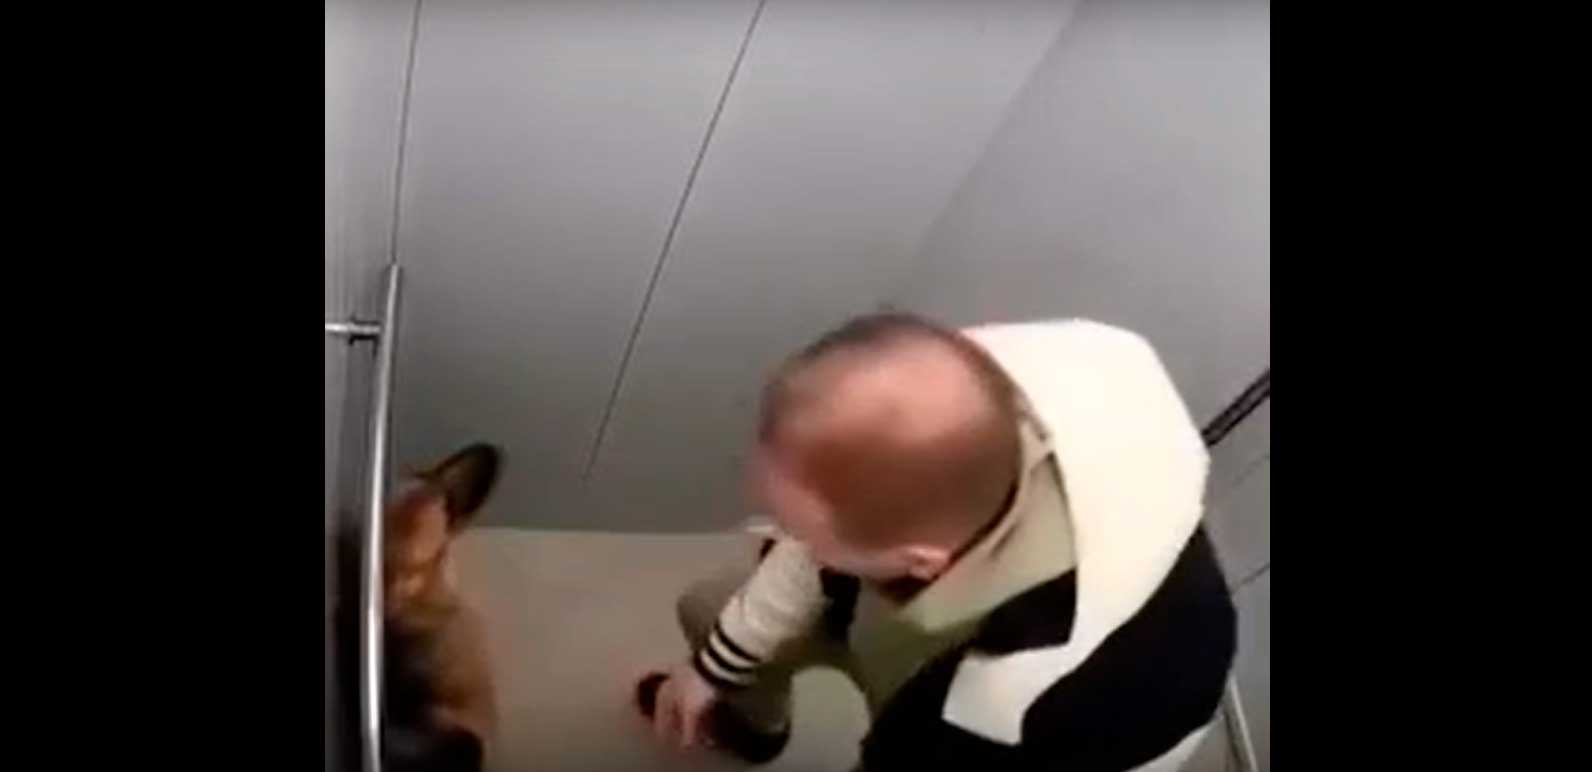 В сети появилось видео — в лифте жилого дома могилевчанин грубо ведет себя с питомцем